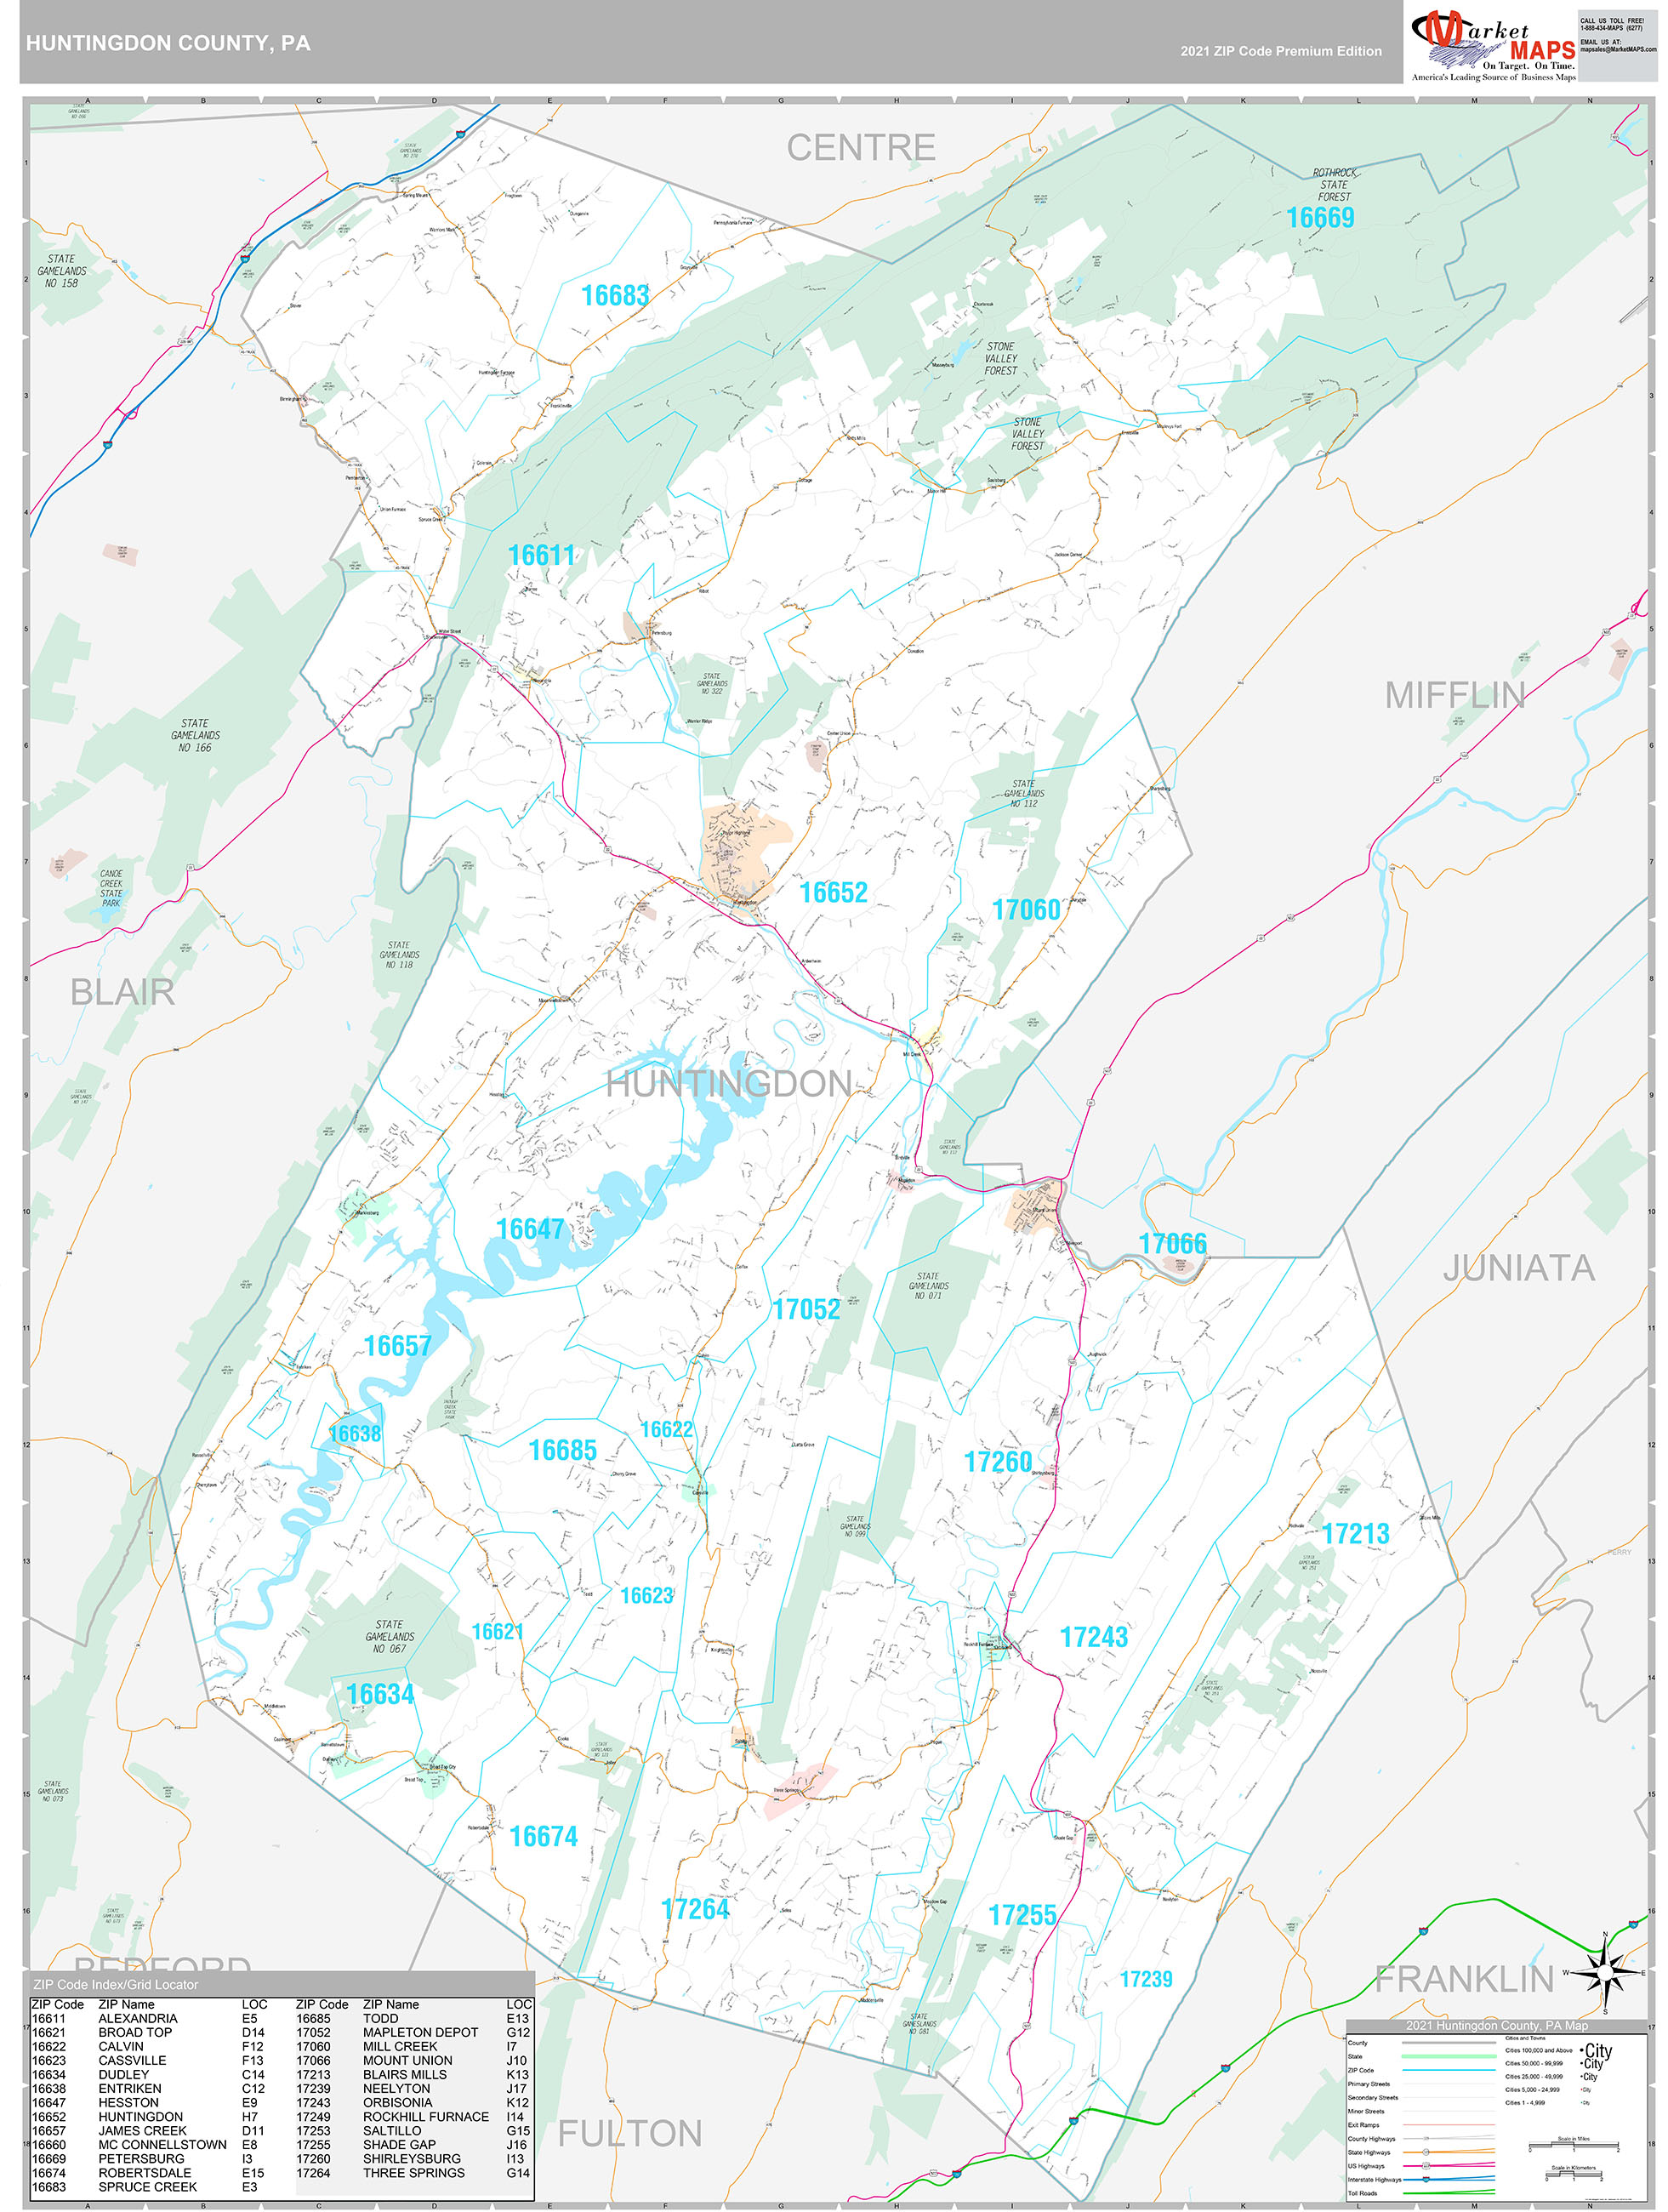 Huntingdon County, PA Wall Map Premium Style by MarketMAPS